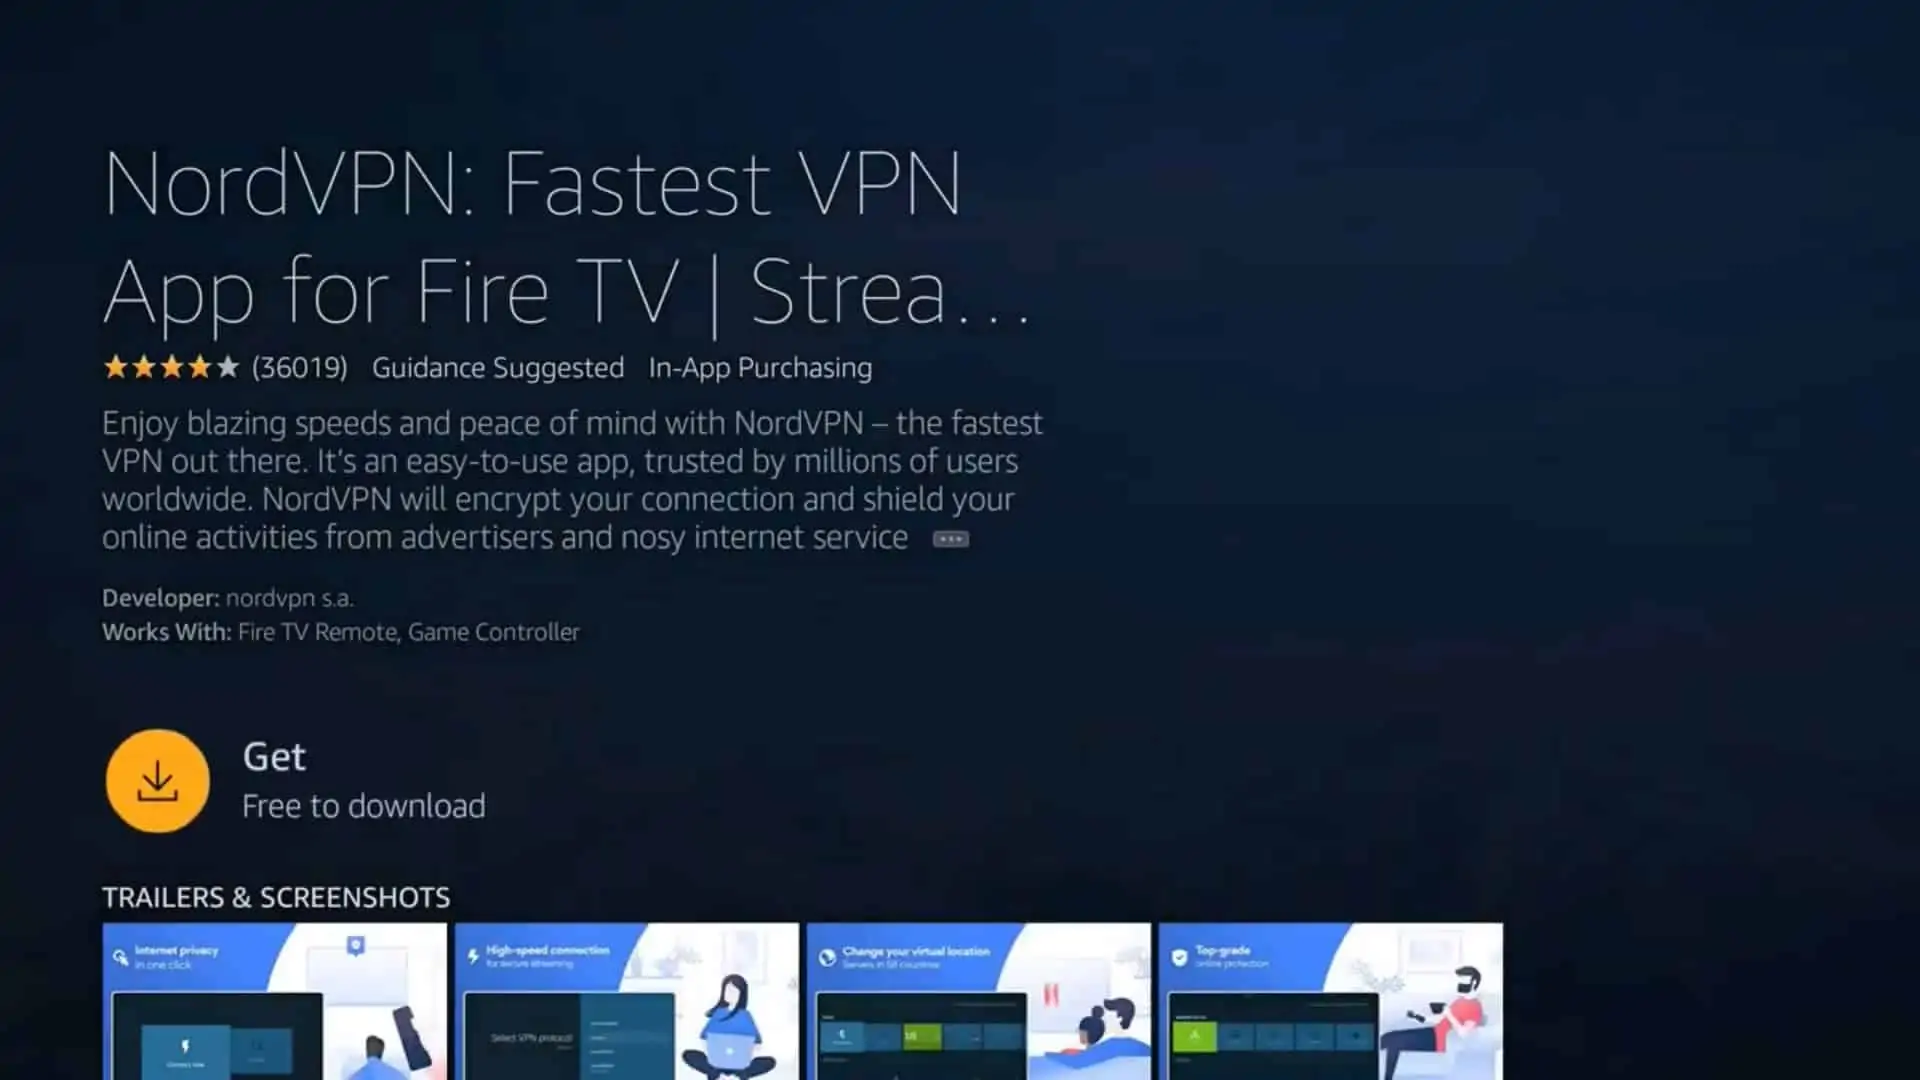 Instalación de una VPN en Fire Stick y Fire TV en 2024